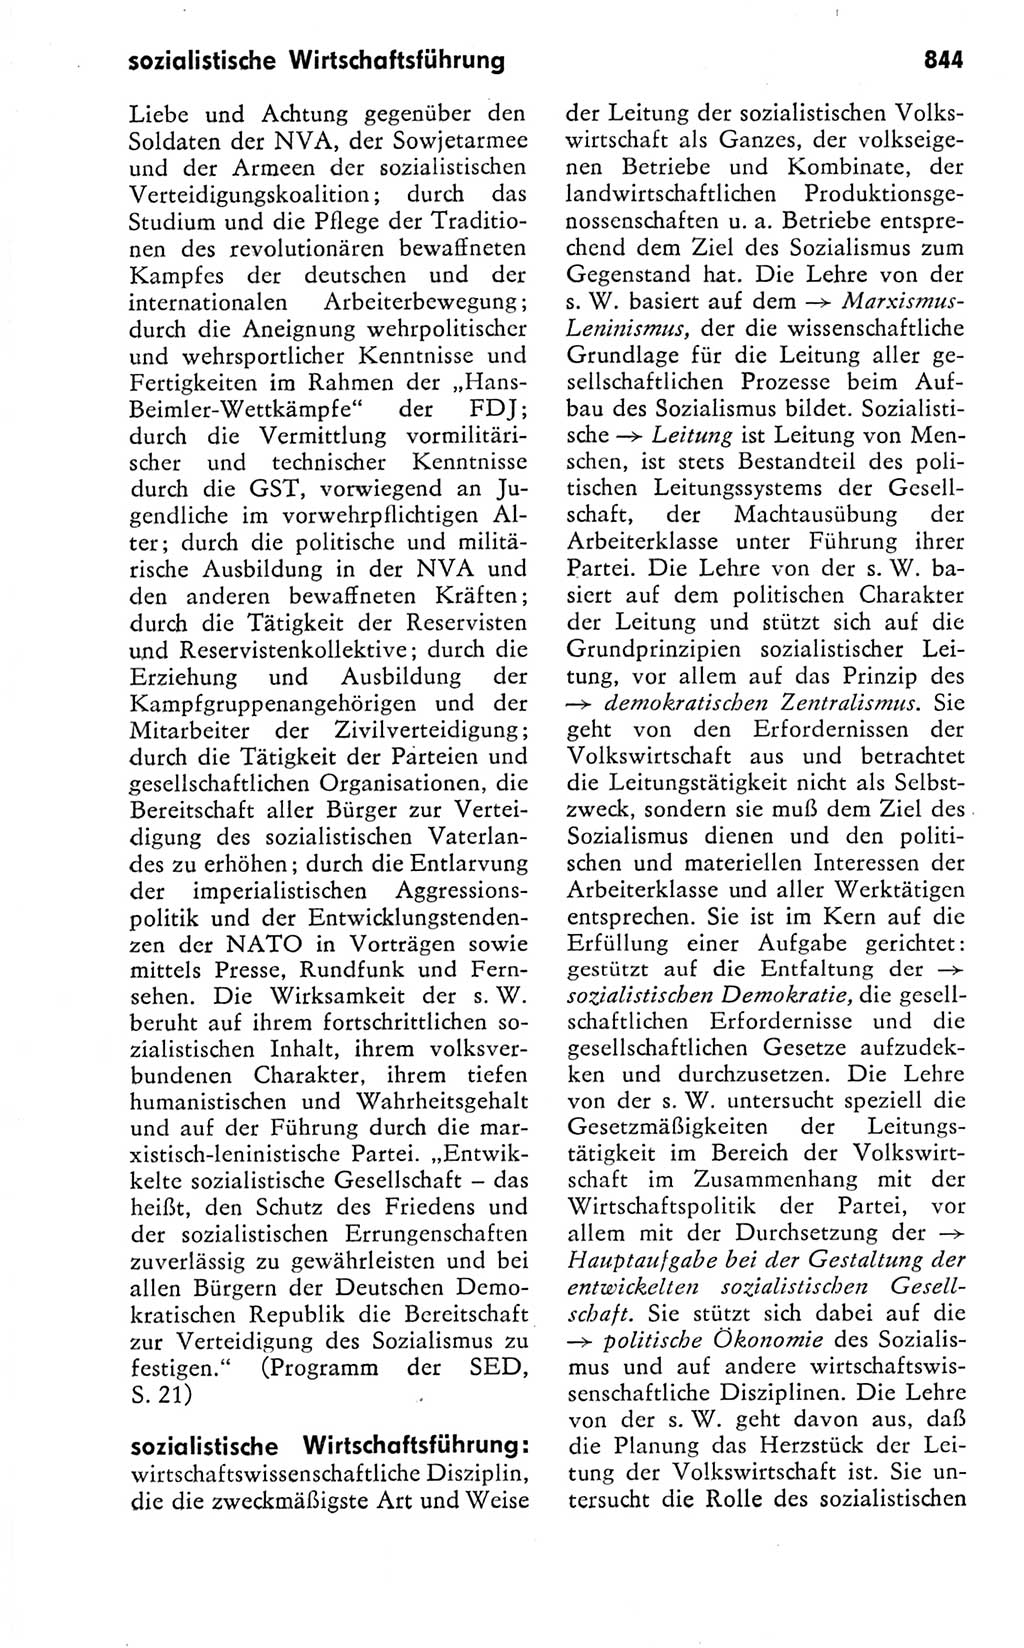 Kleines politisches Wörterbuch [Deutsche Demokratische Republik (DDR)] 1978, Seite 844 (Kl. pol. Wb. DDR 1978, S. 844)